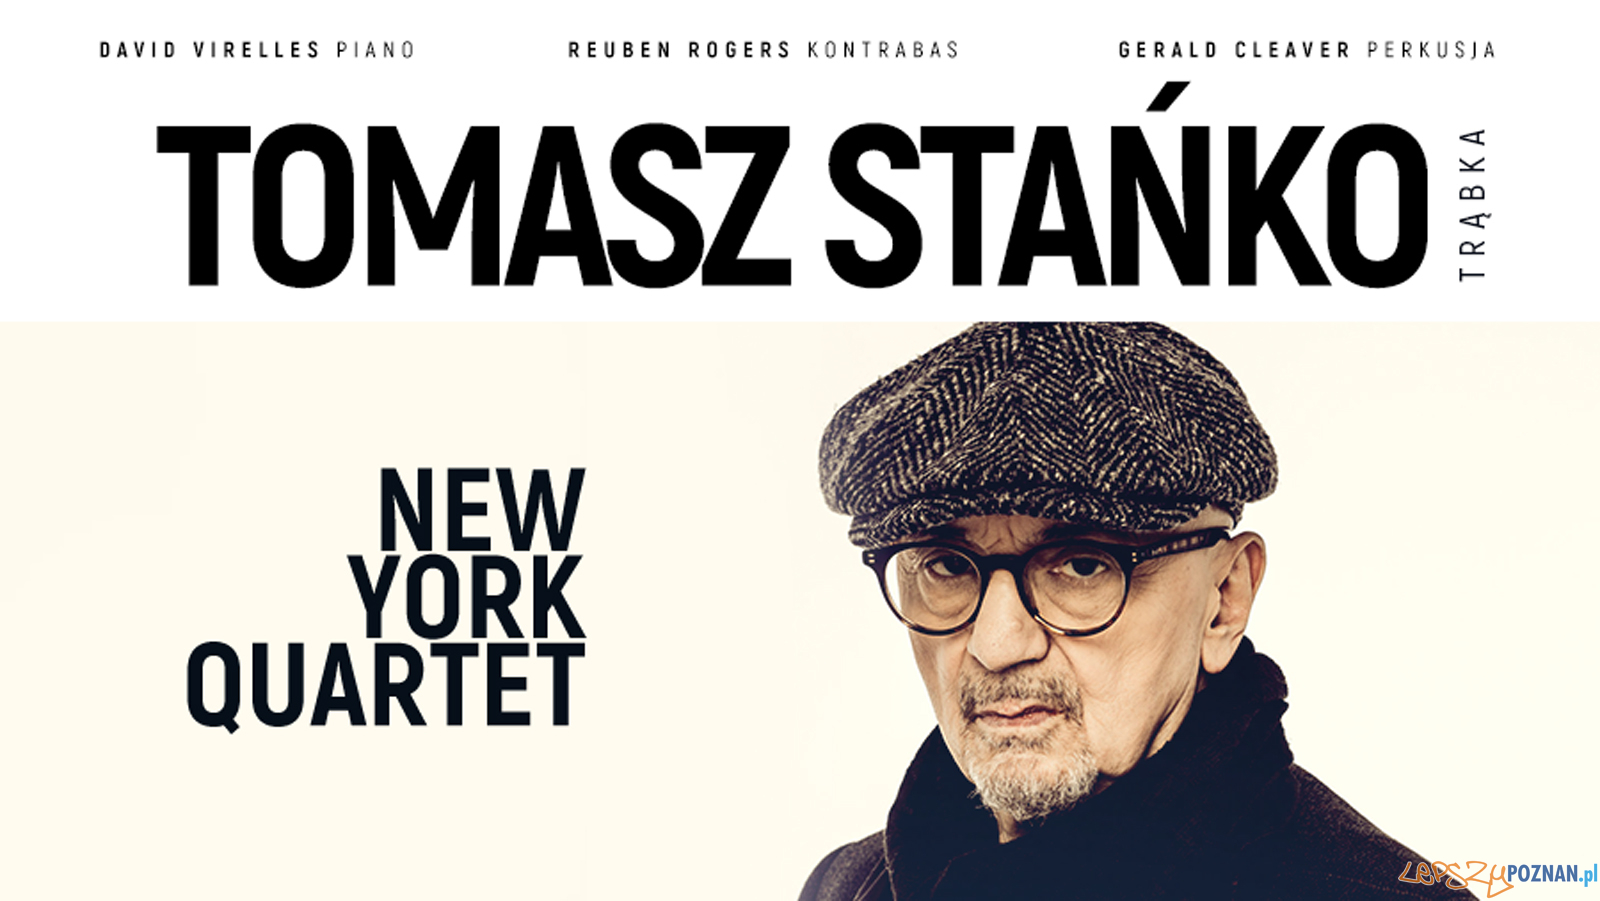 Tomasz Stańko New York Quartet  Foto: materiały prasowe / goodtaste